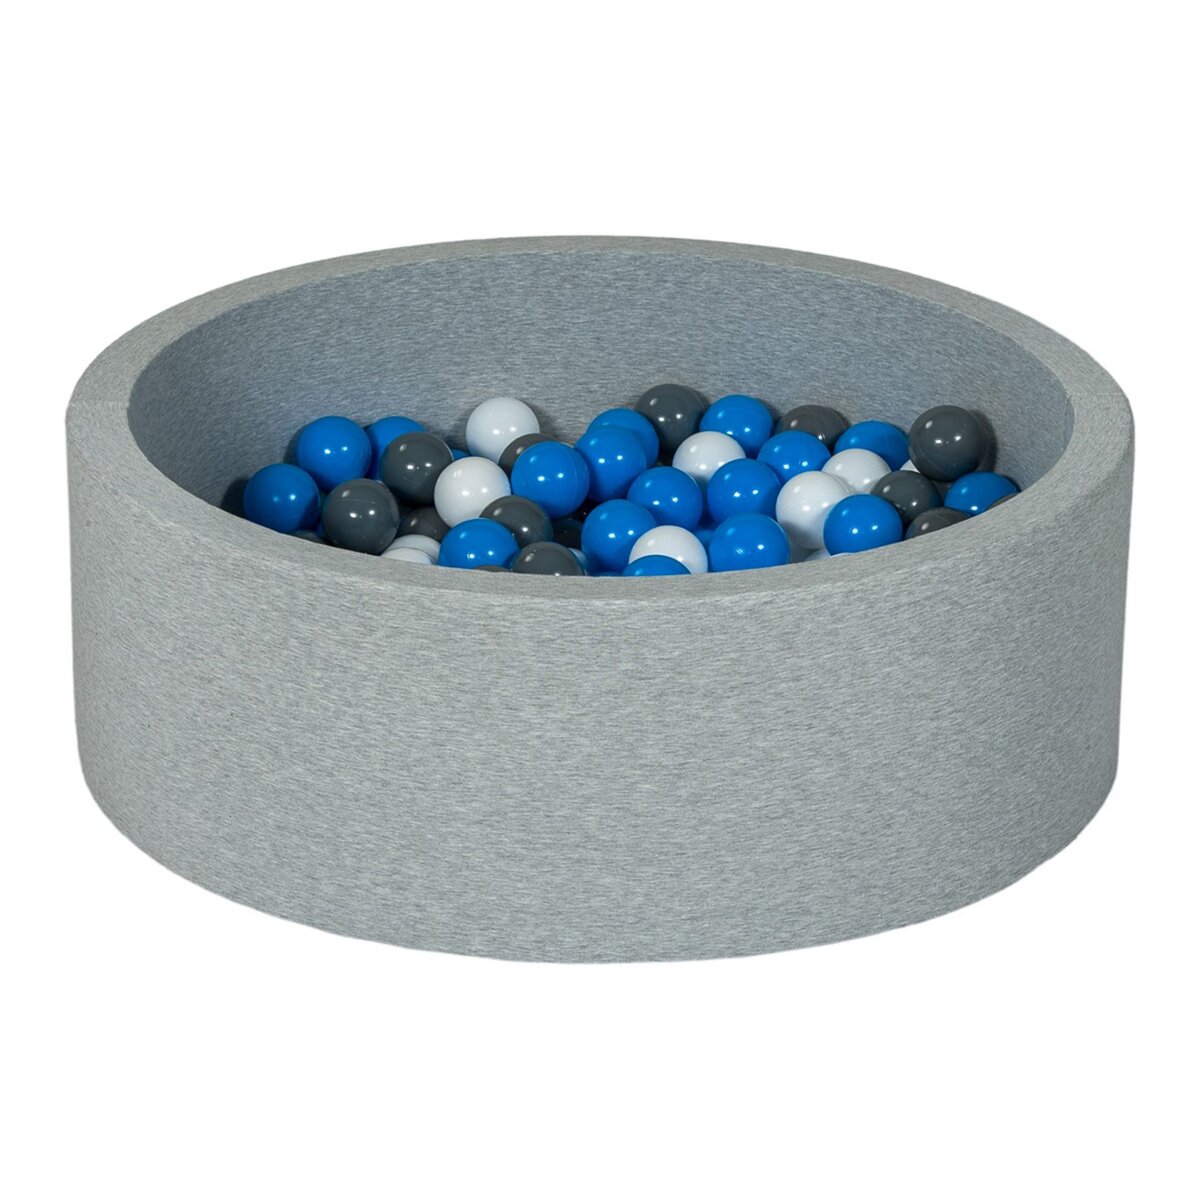  Piscine à balles Aire de jeu + 200 balles blanc,bleu,gris